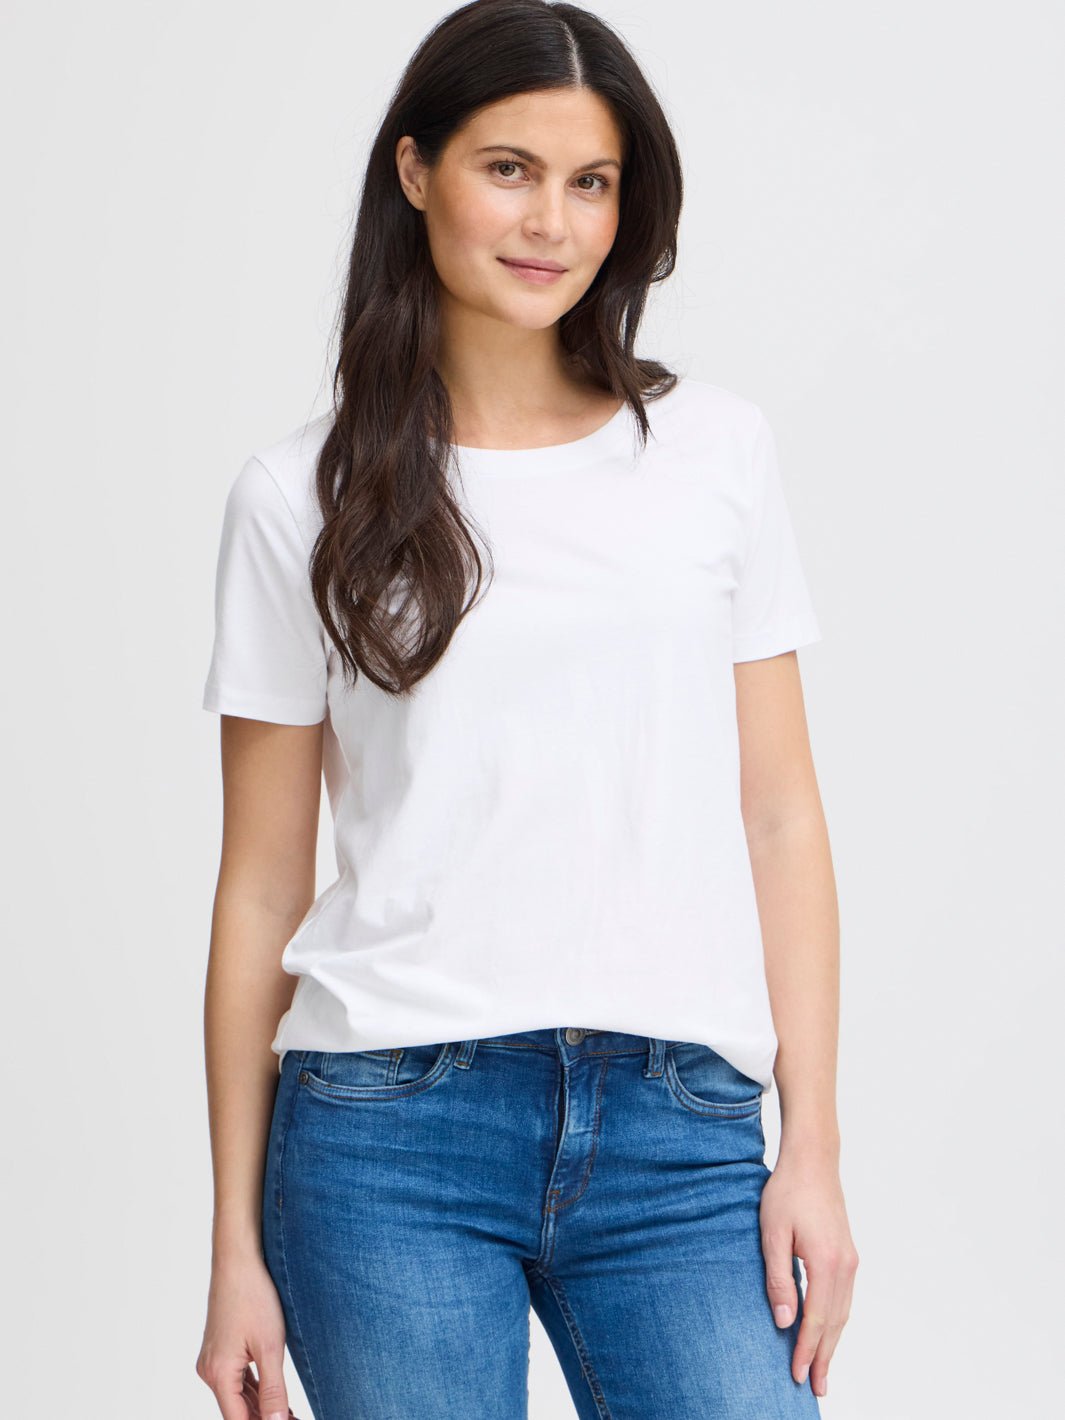 Fransa Zashoulder 1 t-shirt white - Online-Mode